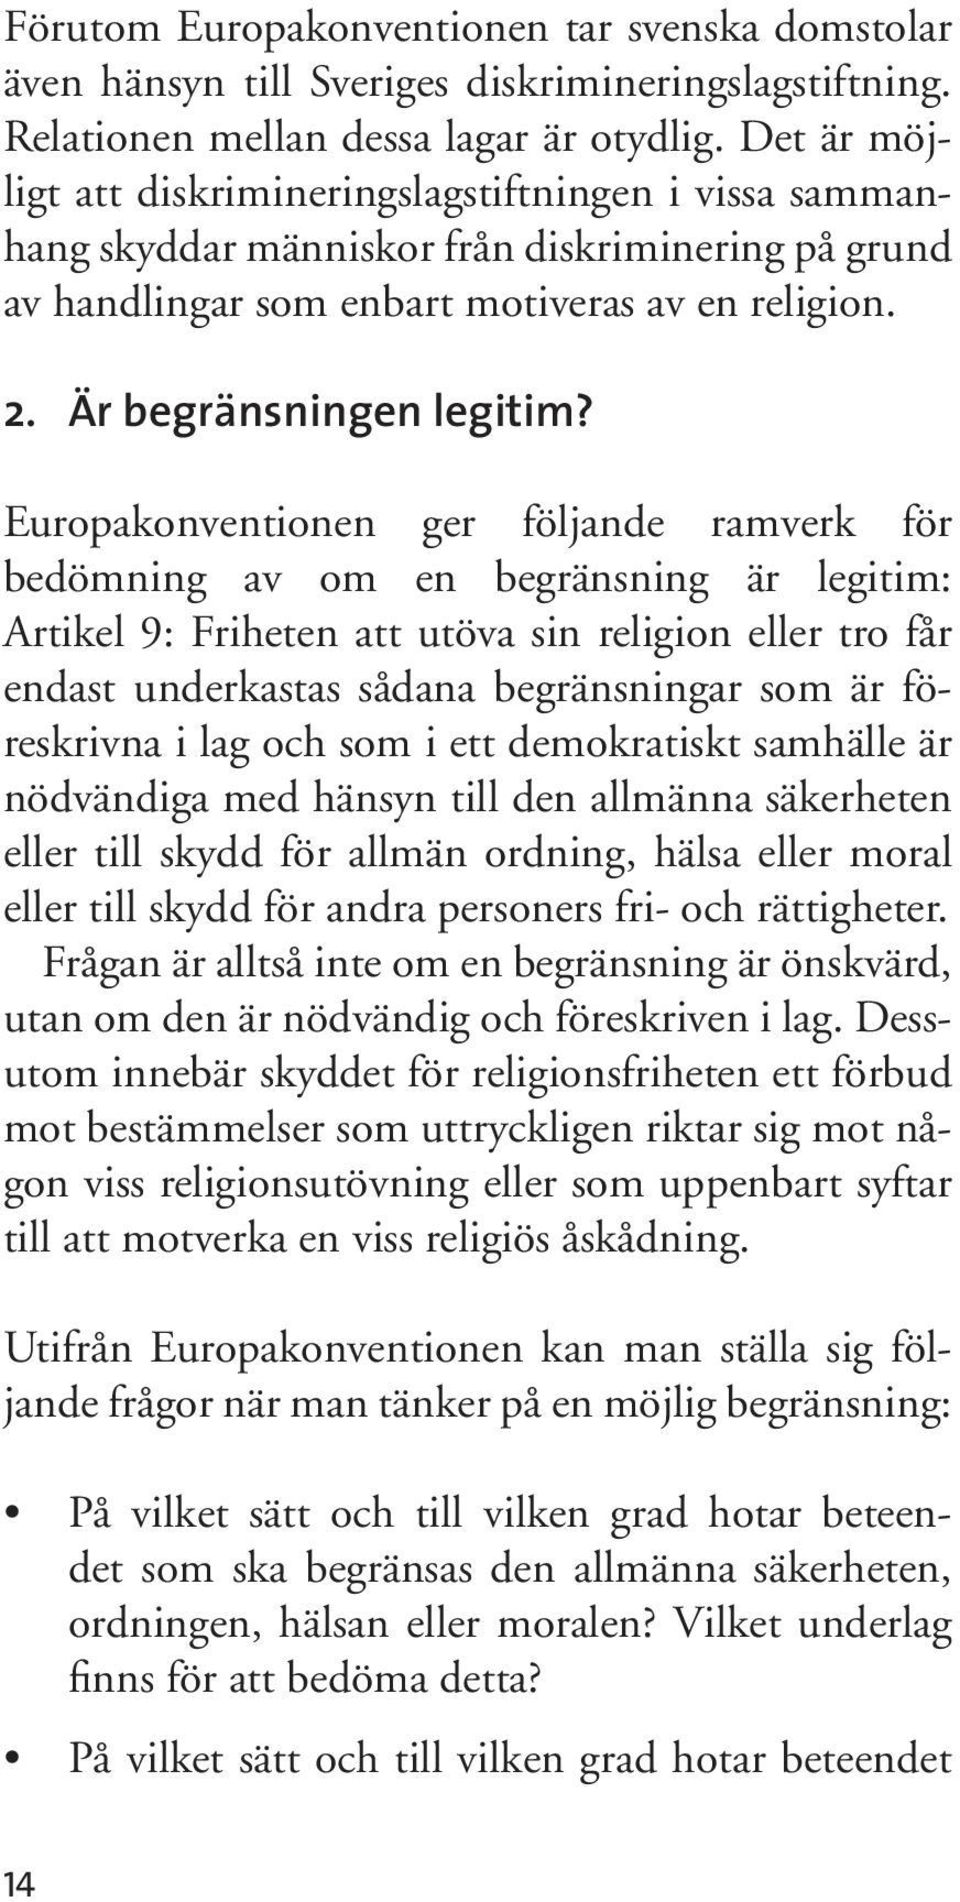 Europakonventionen ger följande ramverk för bedömning av om en begränsning är legitim: Artikel 9: Friheten att utöva sin religion eller tro får endast underkastas sådana begränsningar som är